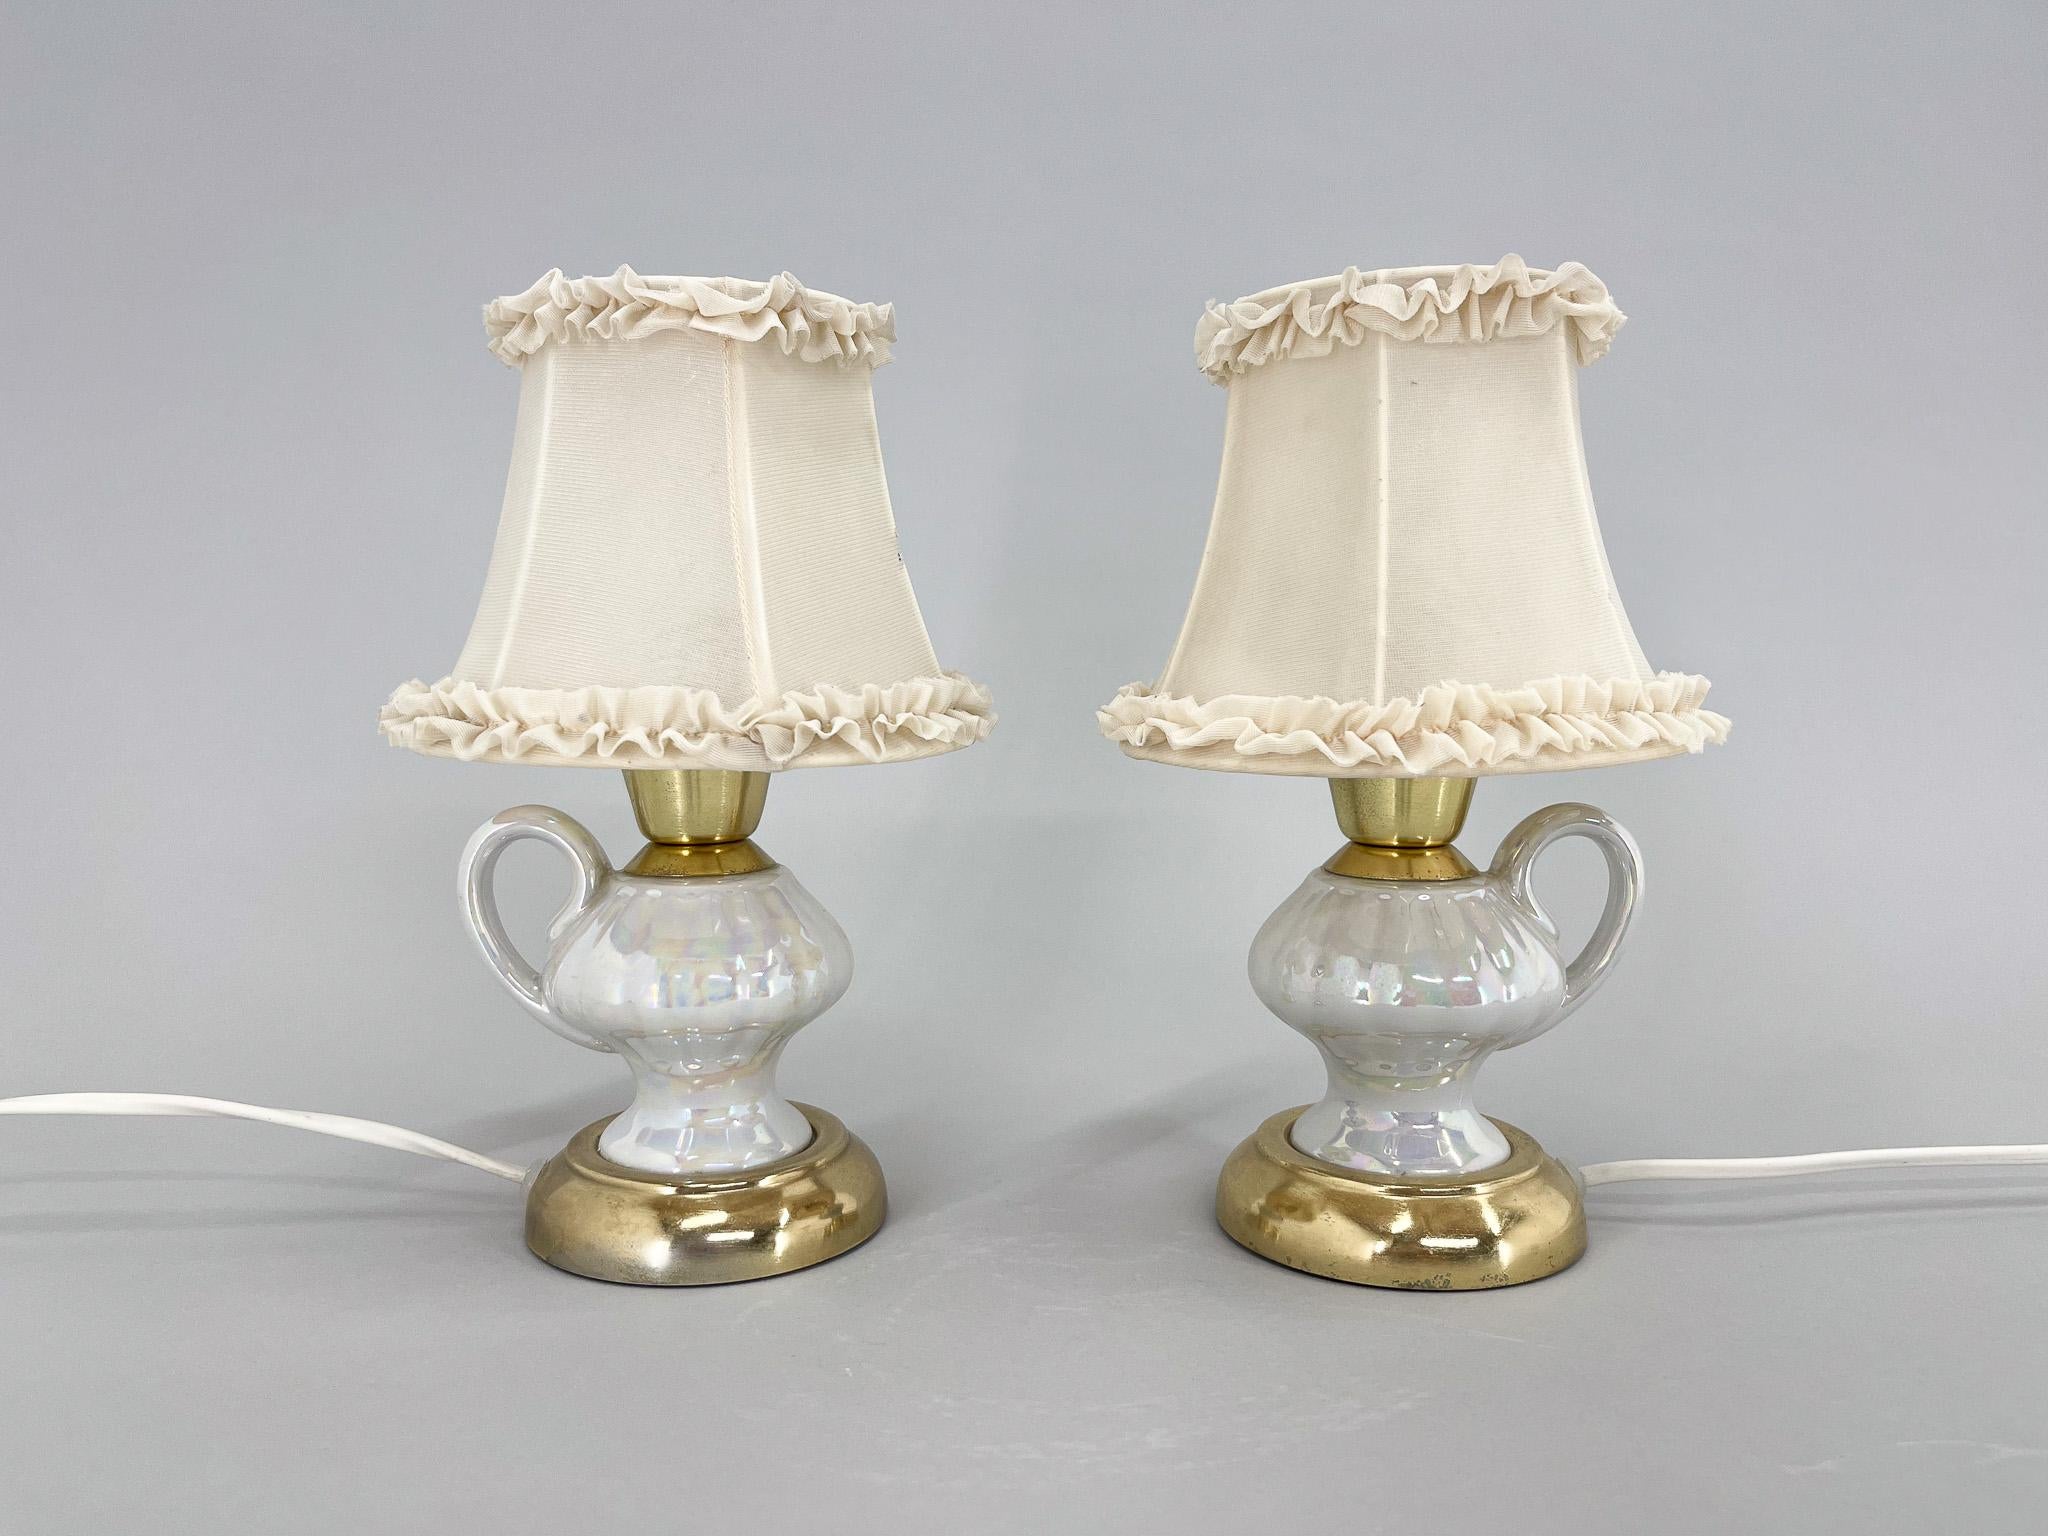 Lampes de chevet ou de table vintage inhabituelles en céramique en forme de tasse de thé, abat-jour en métal et tissu. Câblage d'origine, entièrement fonctionnel.